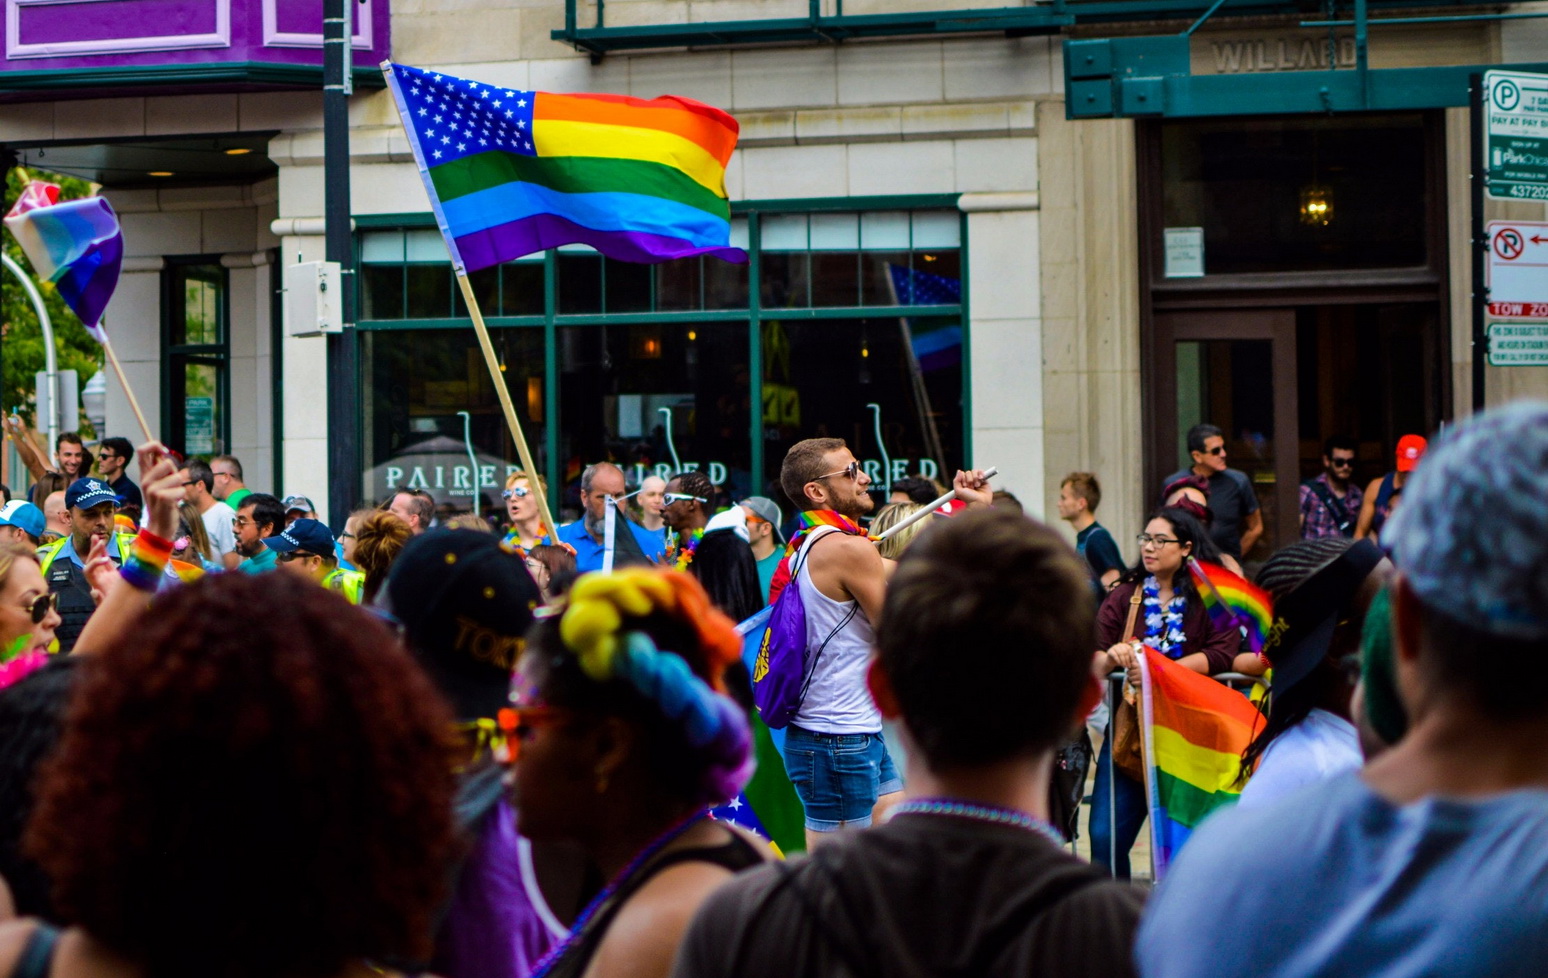 О правах ЛГБТ и Манифесте Марша равенства. Интервью с экспертом Украинского Хельсинского союза по правам человека